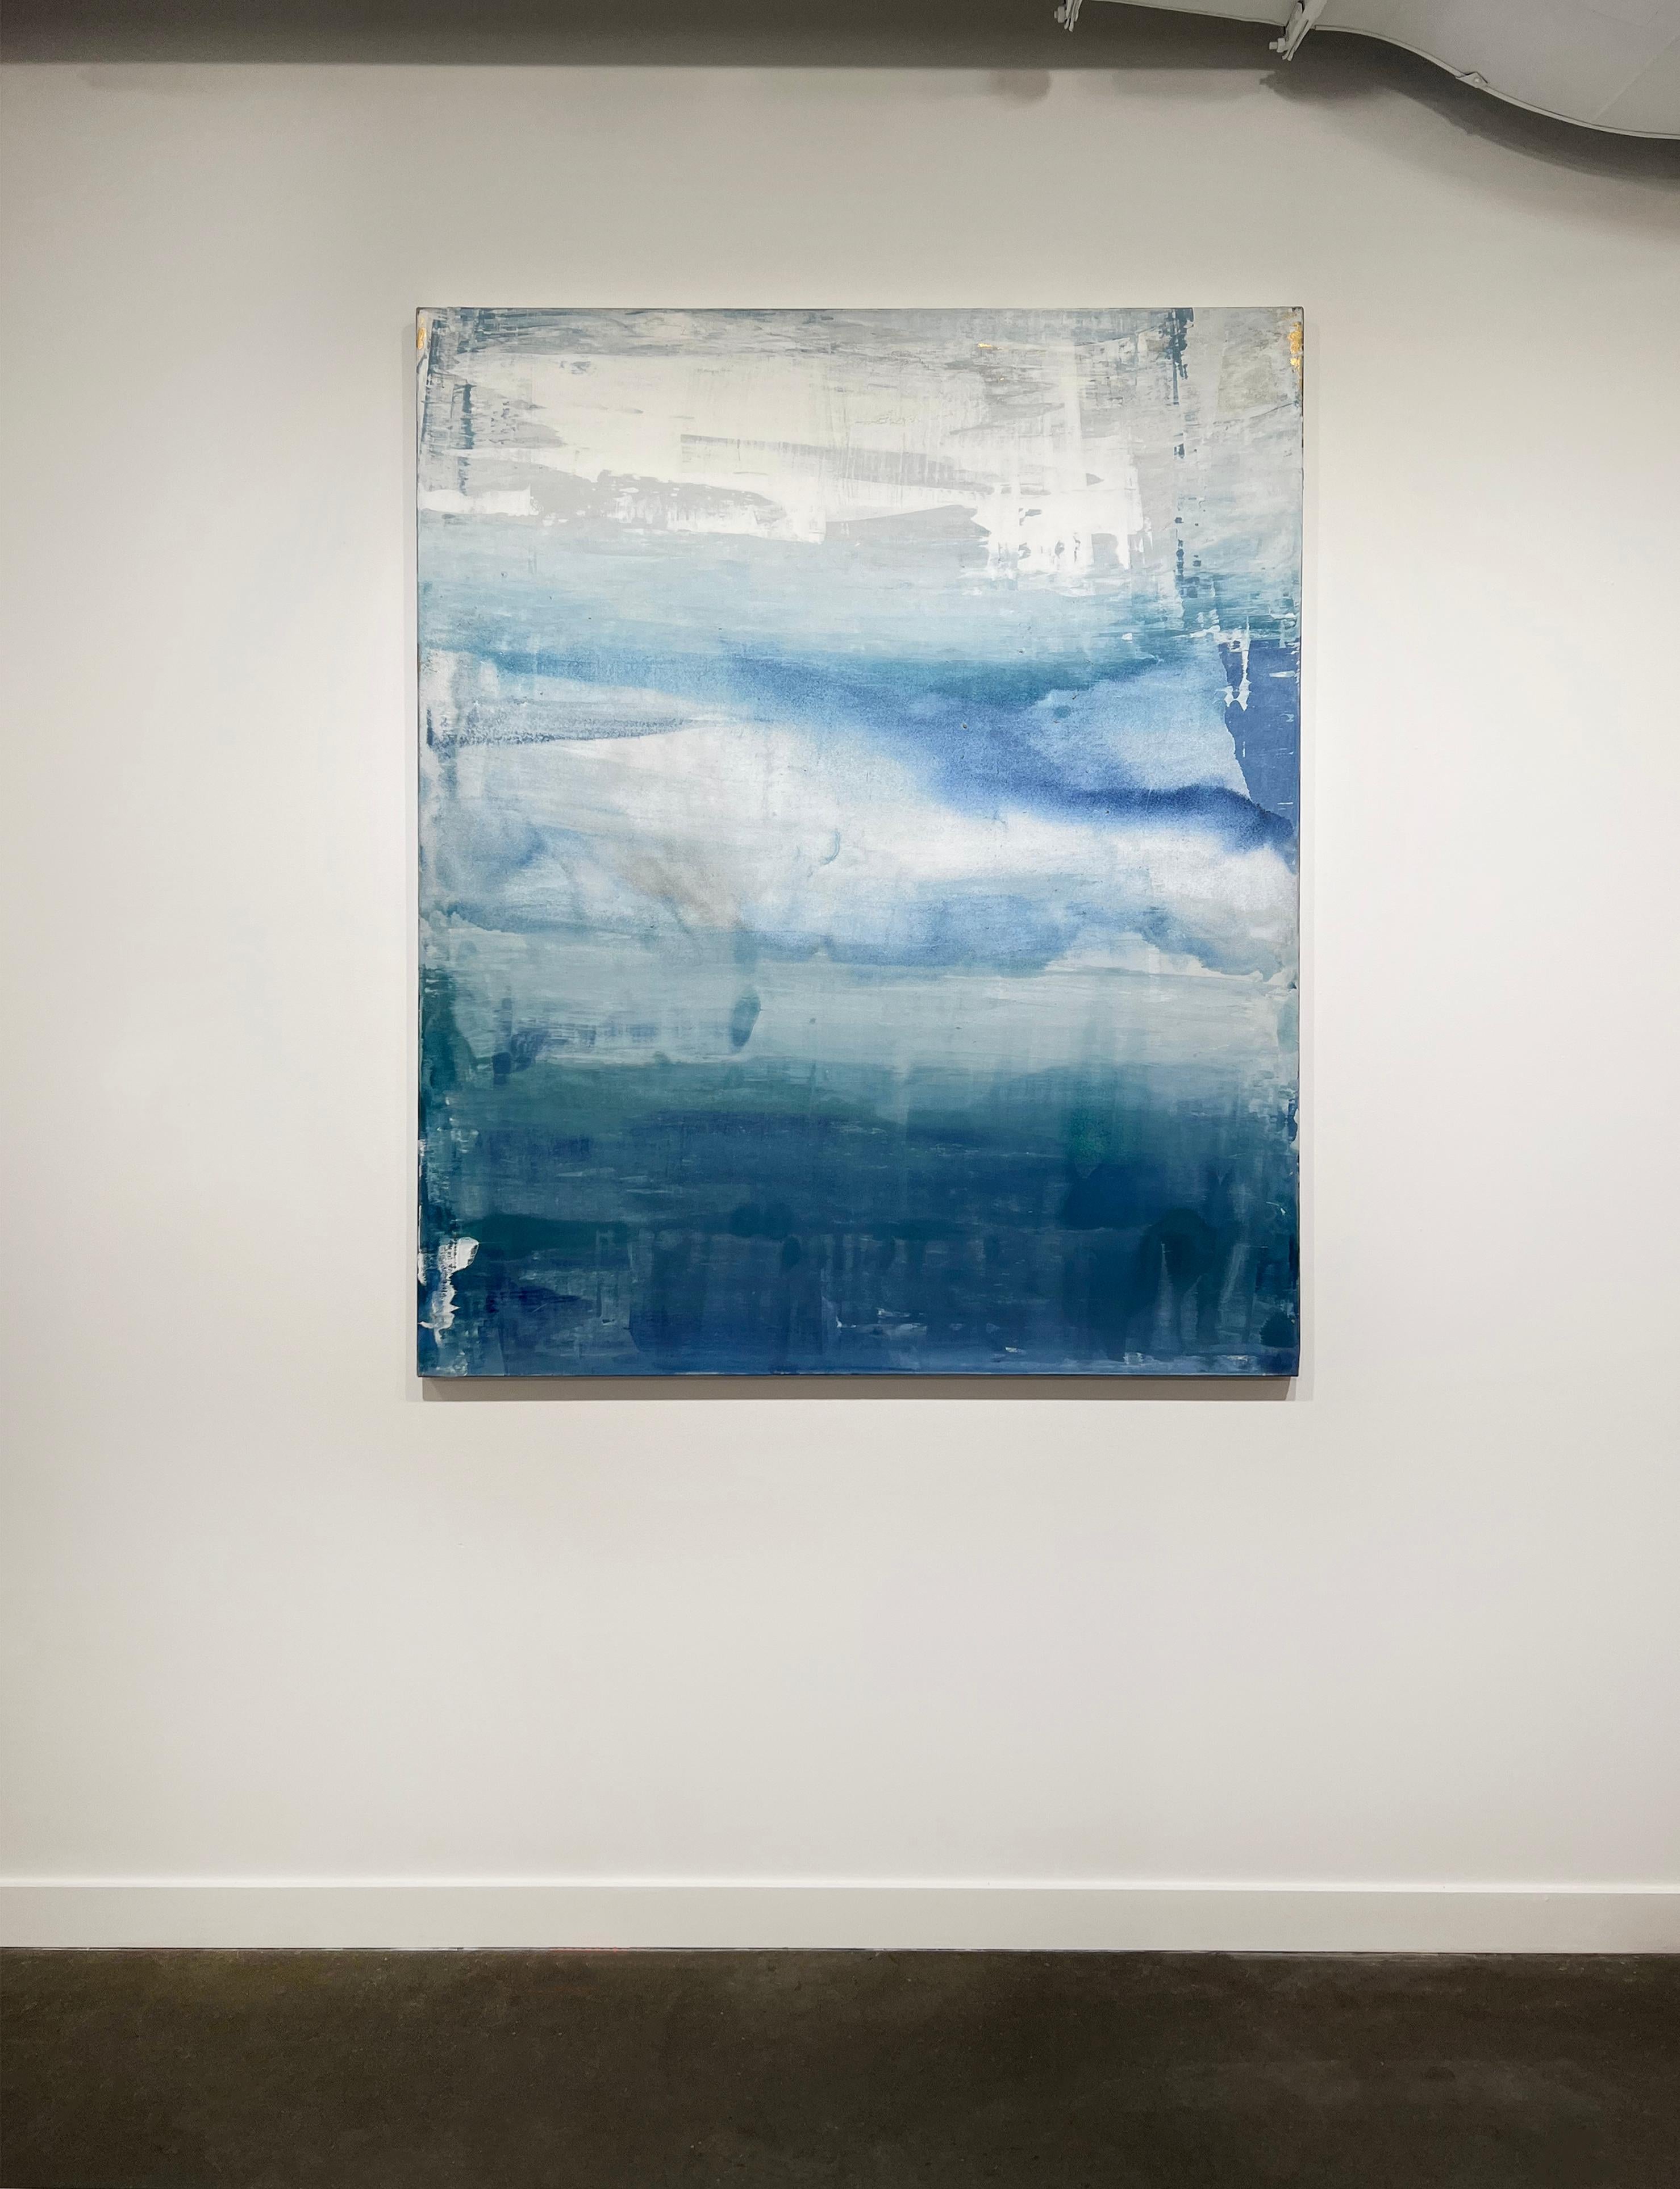 Cette peinture abstraite côtière de Julia Contacessi présente un beau mélange de bleus, de verts, de gris et de blancs froids, créant une esthétique douce que l'artiste compare à la sensation de montée et de descente d'une marée solaire. Lorsque le